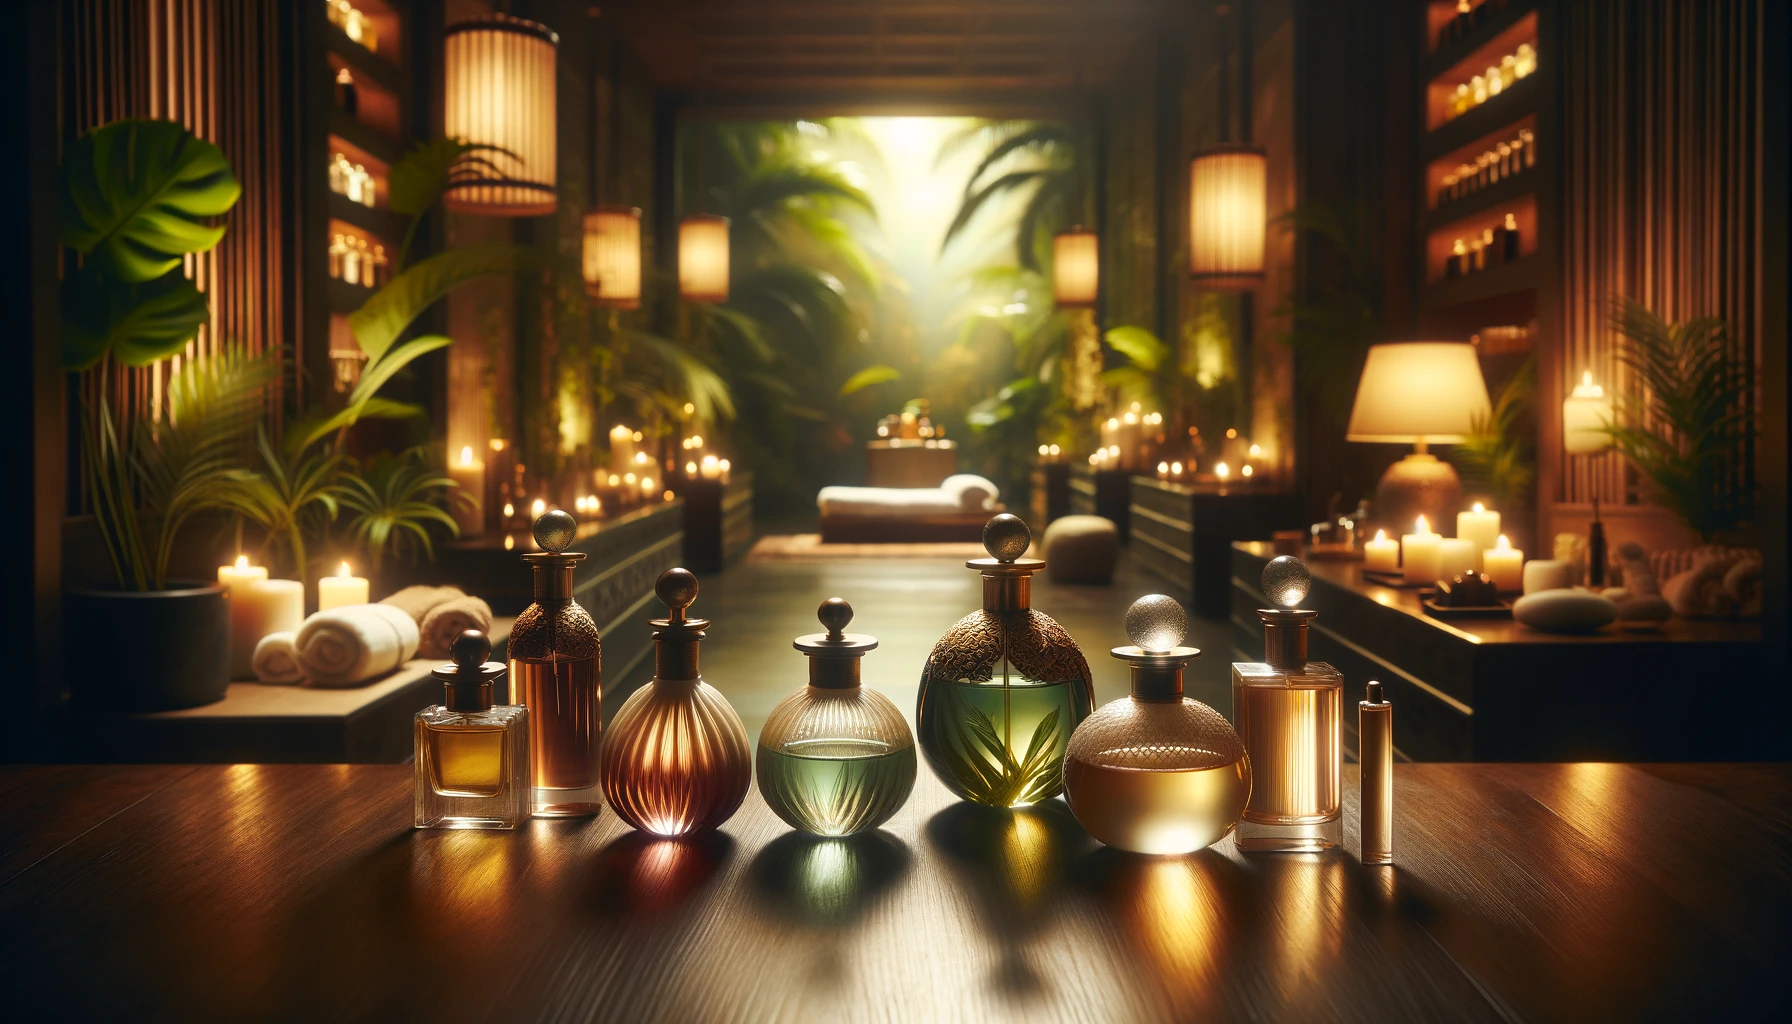 TranquilScents - Aromas artesanales para la serenidad y la relajación 